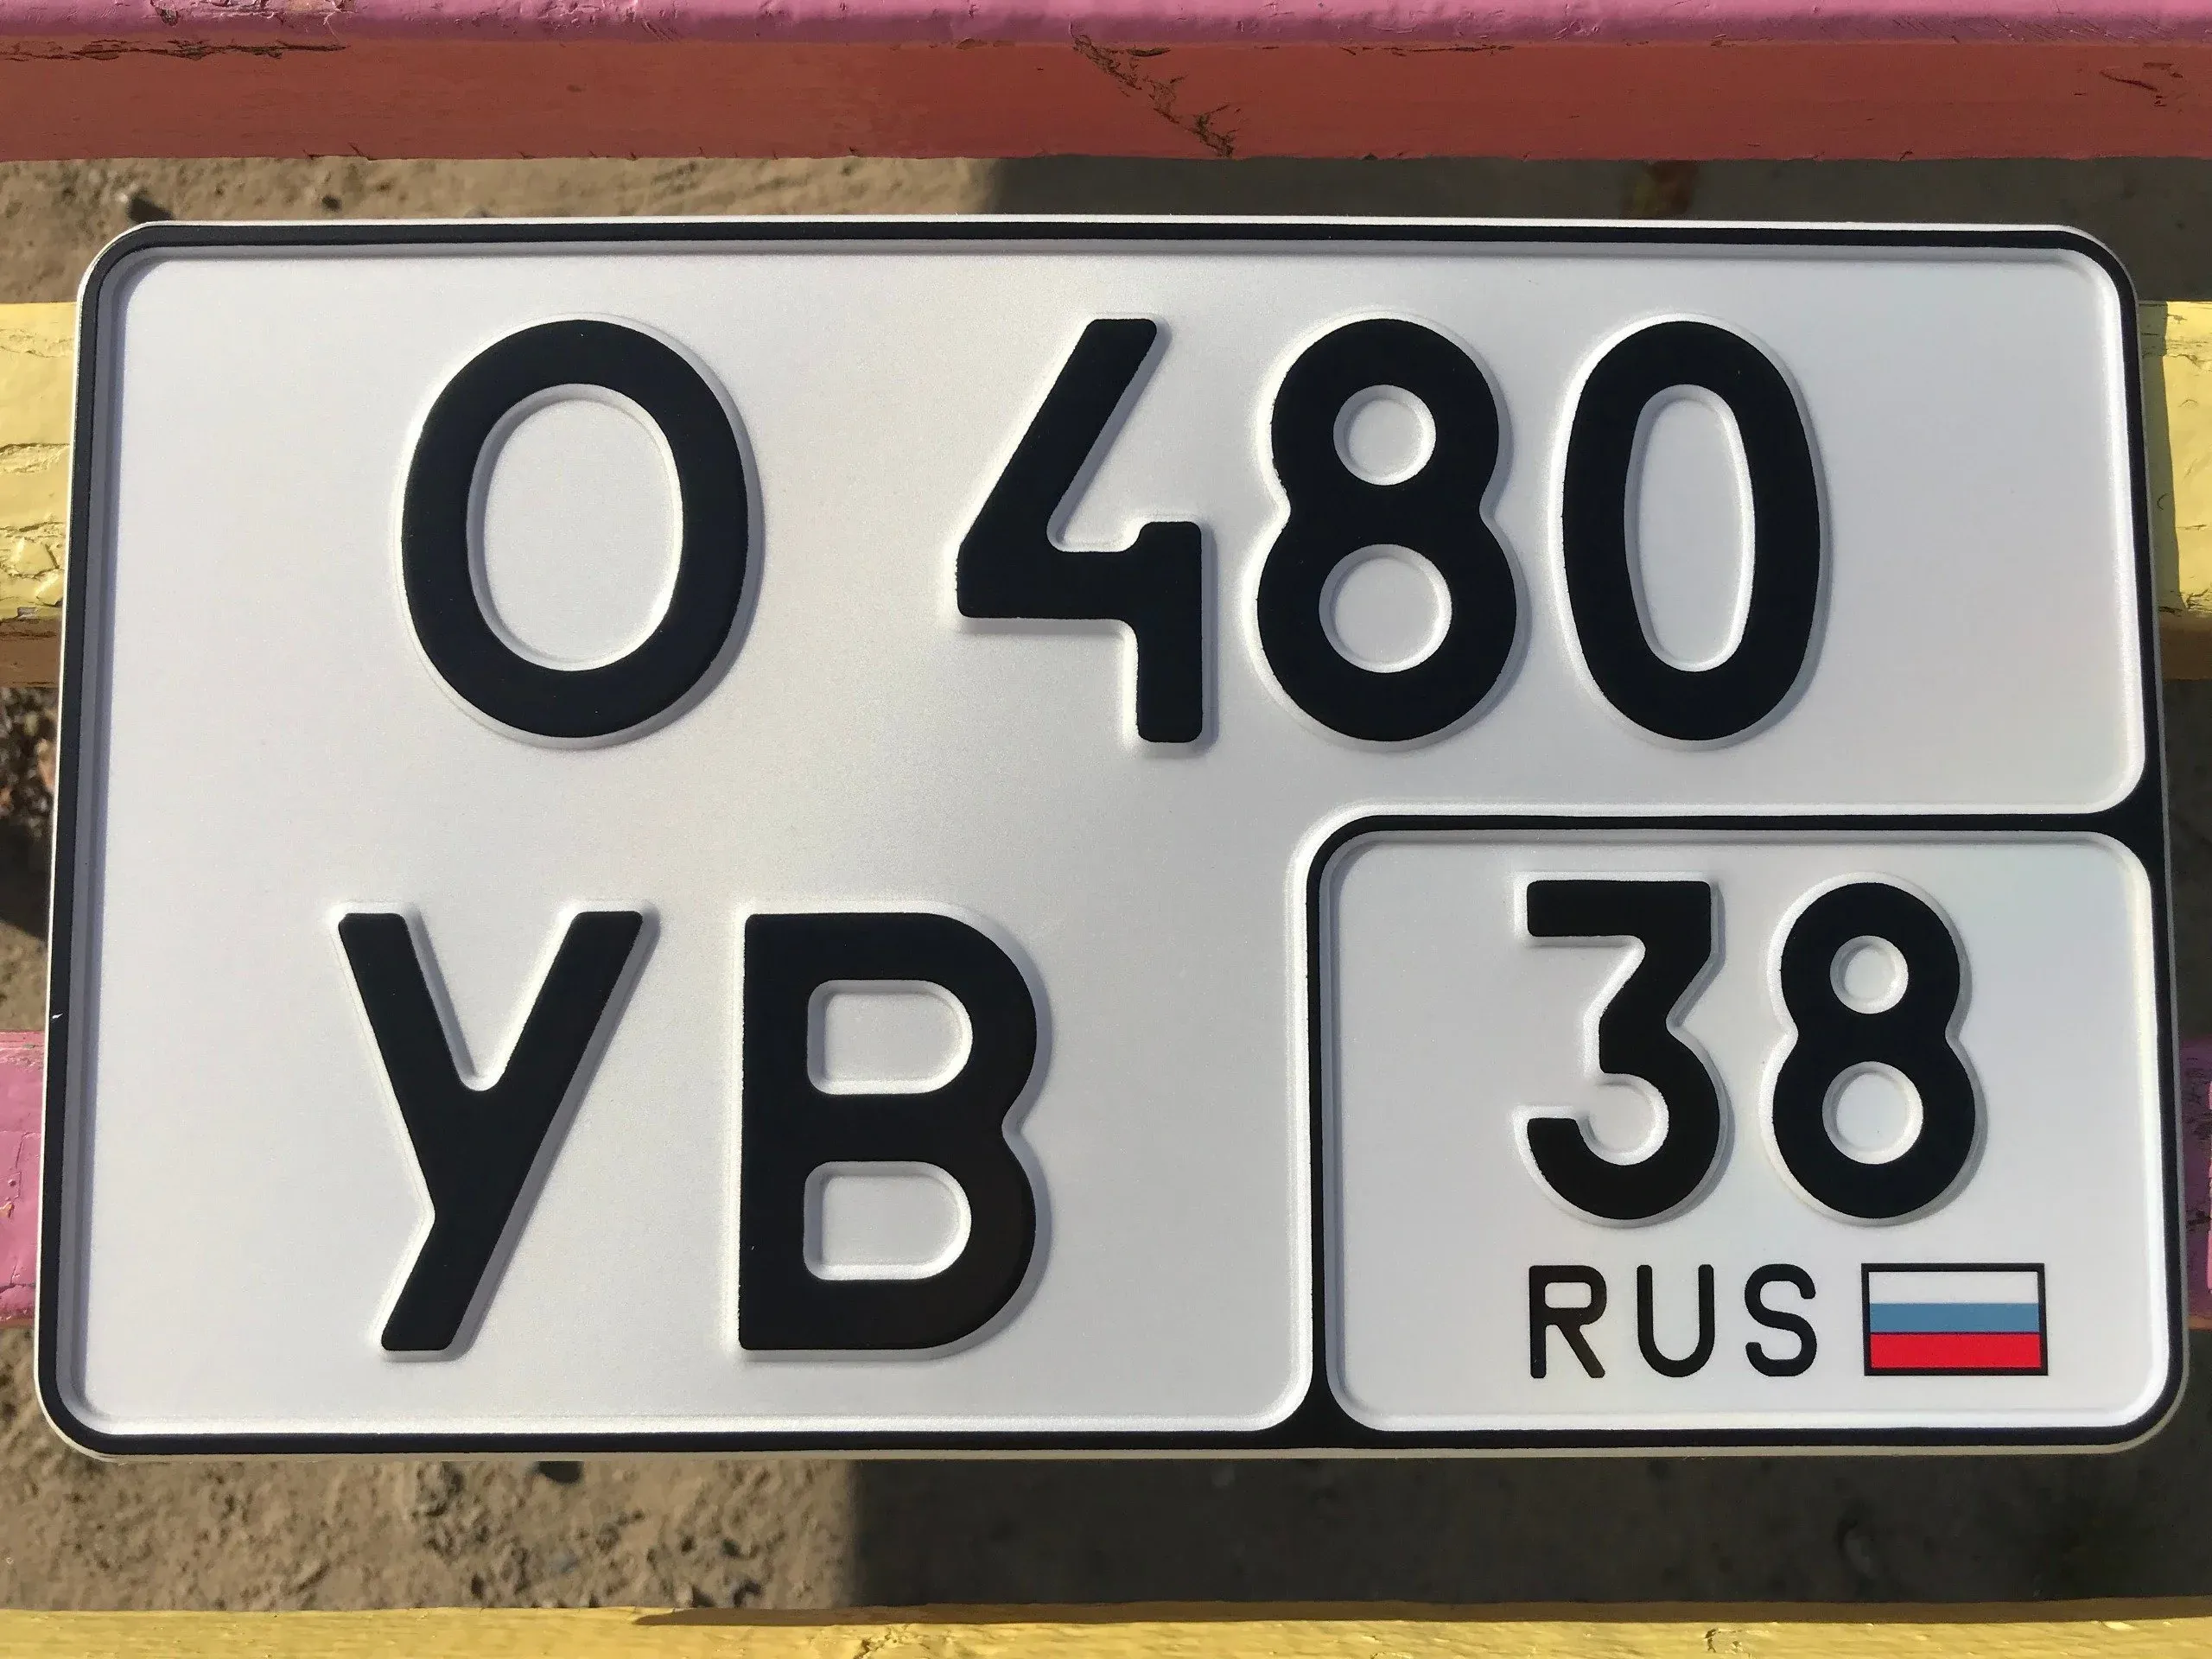 Автономера на машину. Номерной знак автомобиля. Квадратный номерной знак. Квадратные госномера на автомобиль. Квадратные номерные знаки в России.